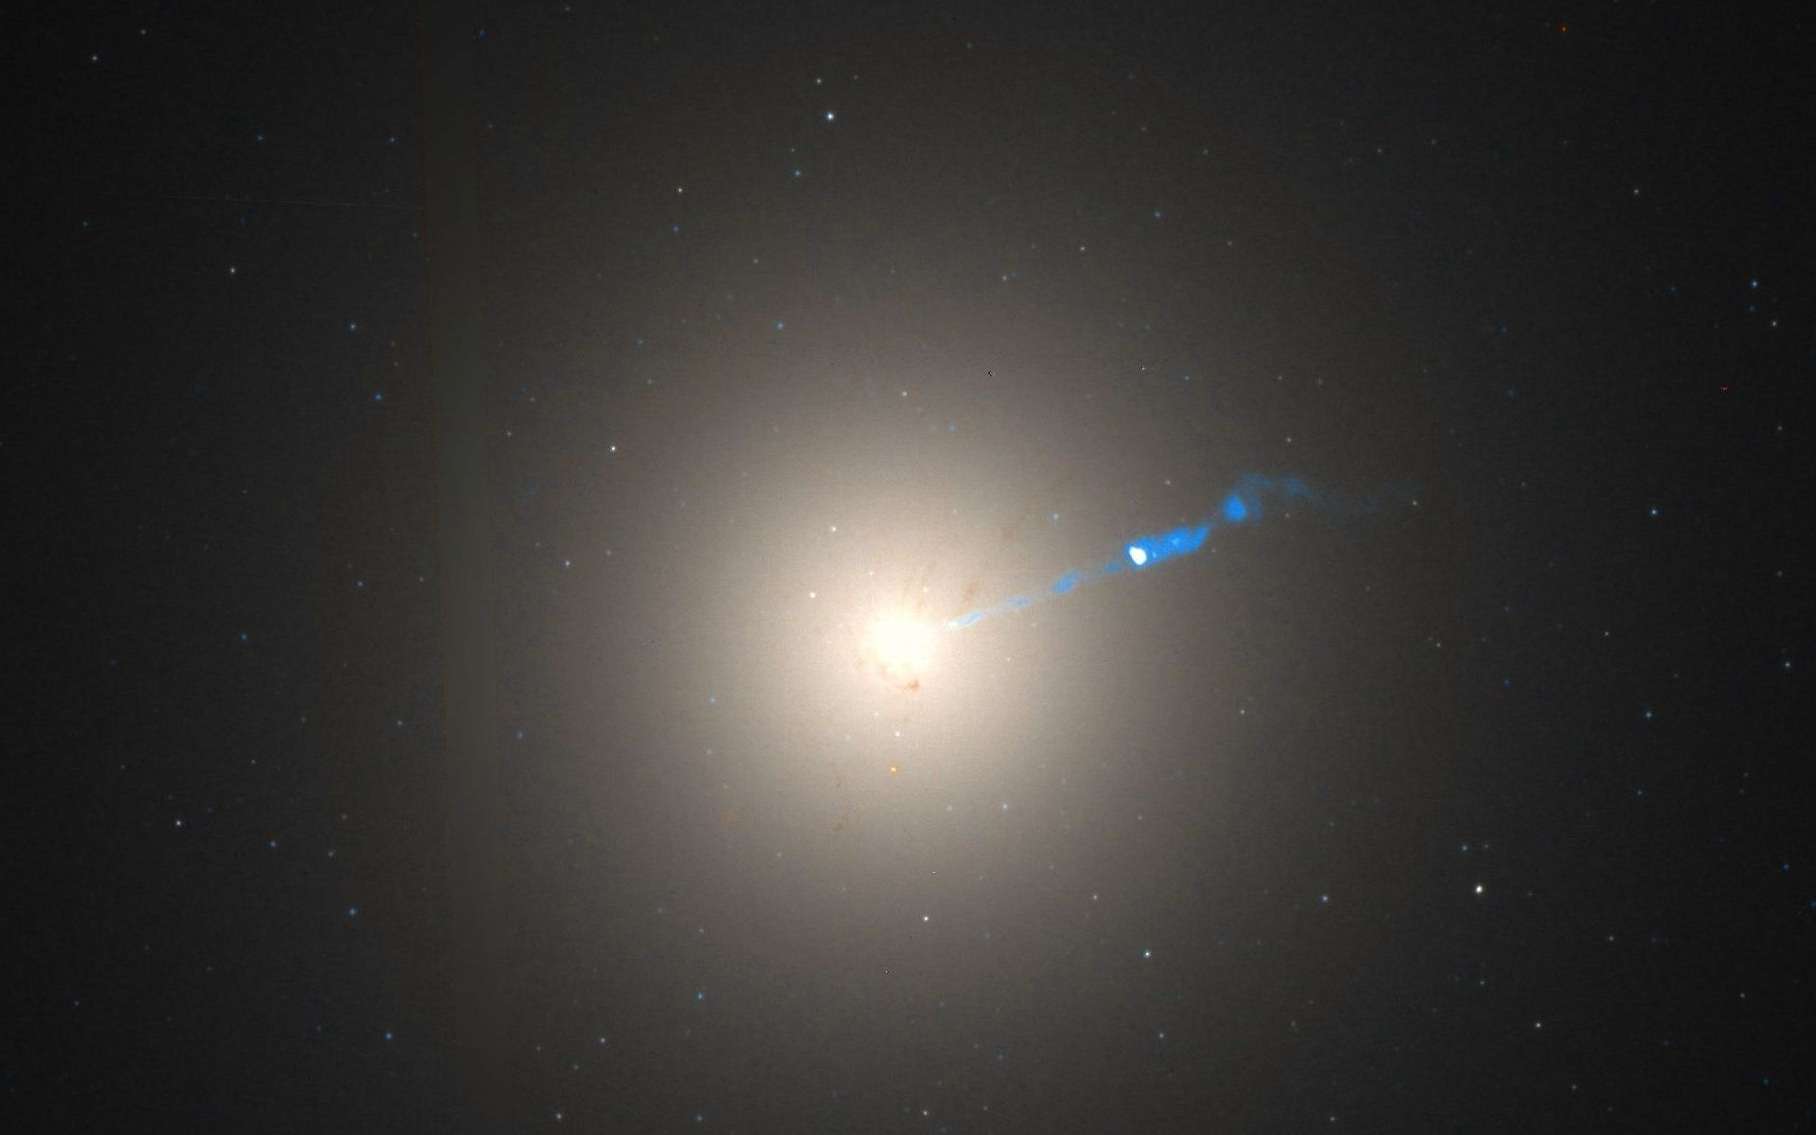 Коллаборация Телескопа горизонта событий представила данные по поляризации излучения от аккреционного диска вокруг черной дыры в центре галактики M87, позволившие многое понять про структуру магнитного поля в ее окрестностях В некотором смысле этот резуль